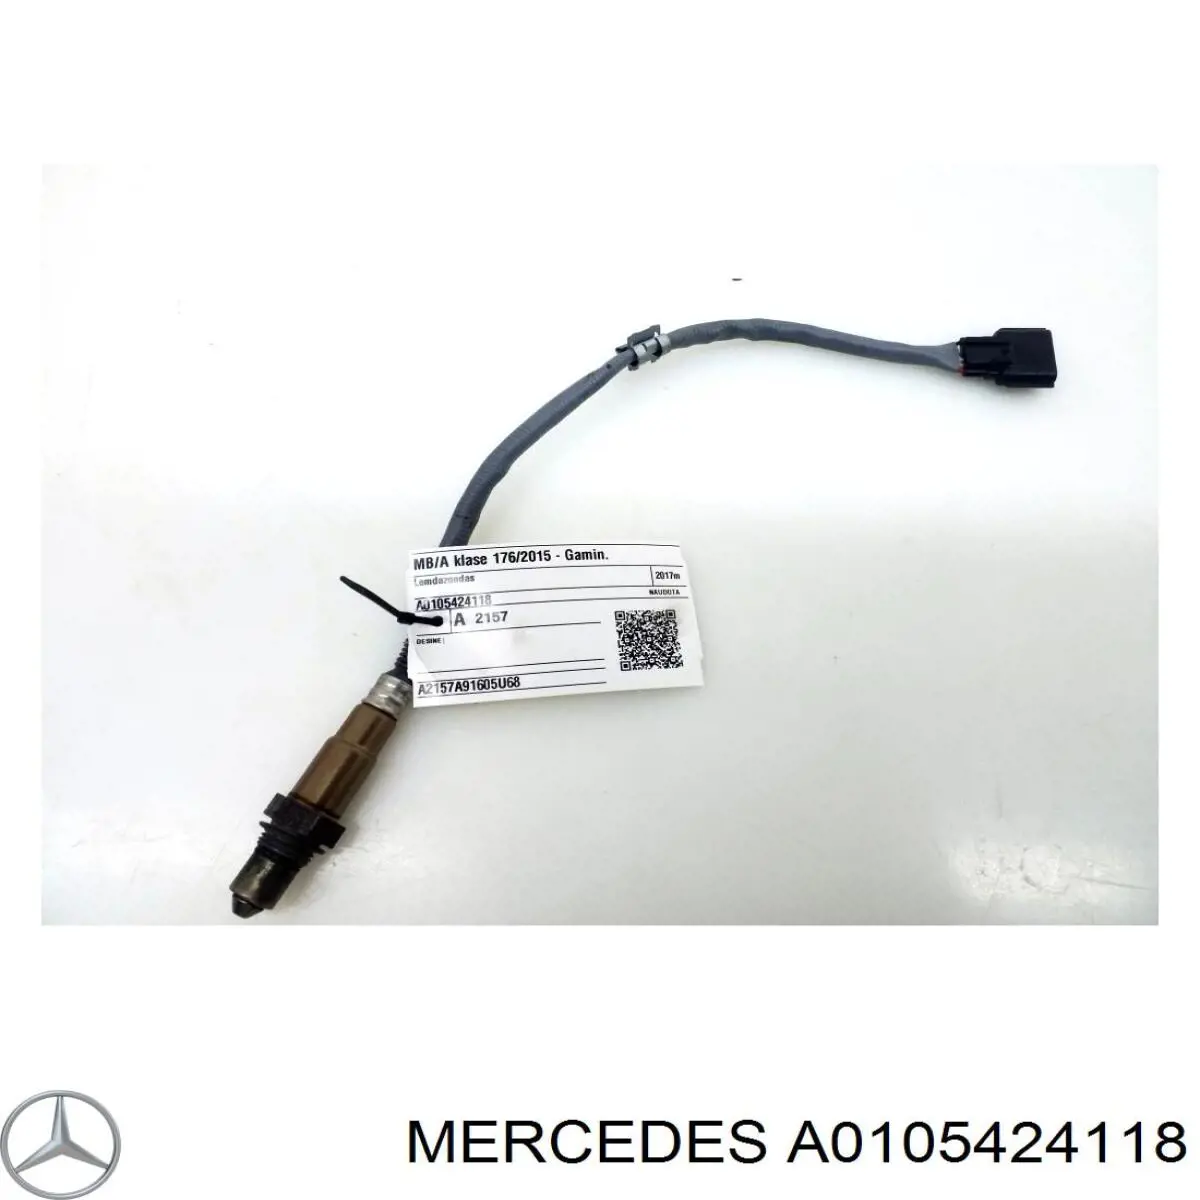 A0105424118 Mercedes sonda lambda, sensor de oxigênio até o catalisador